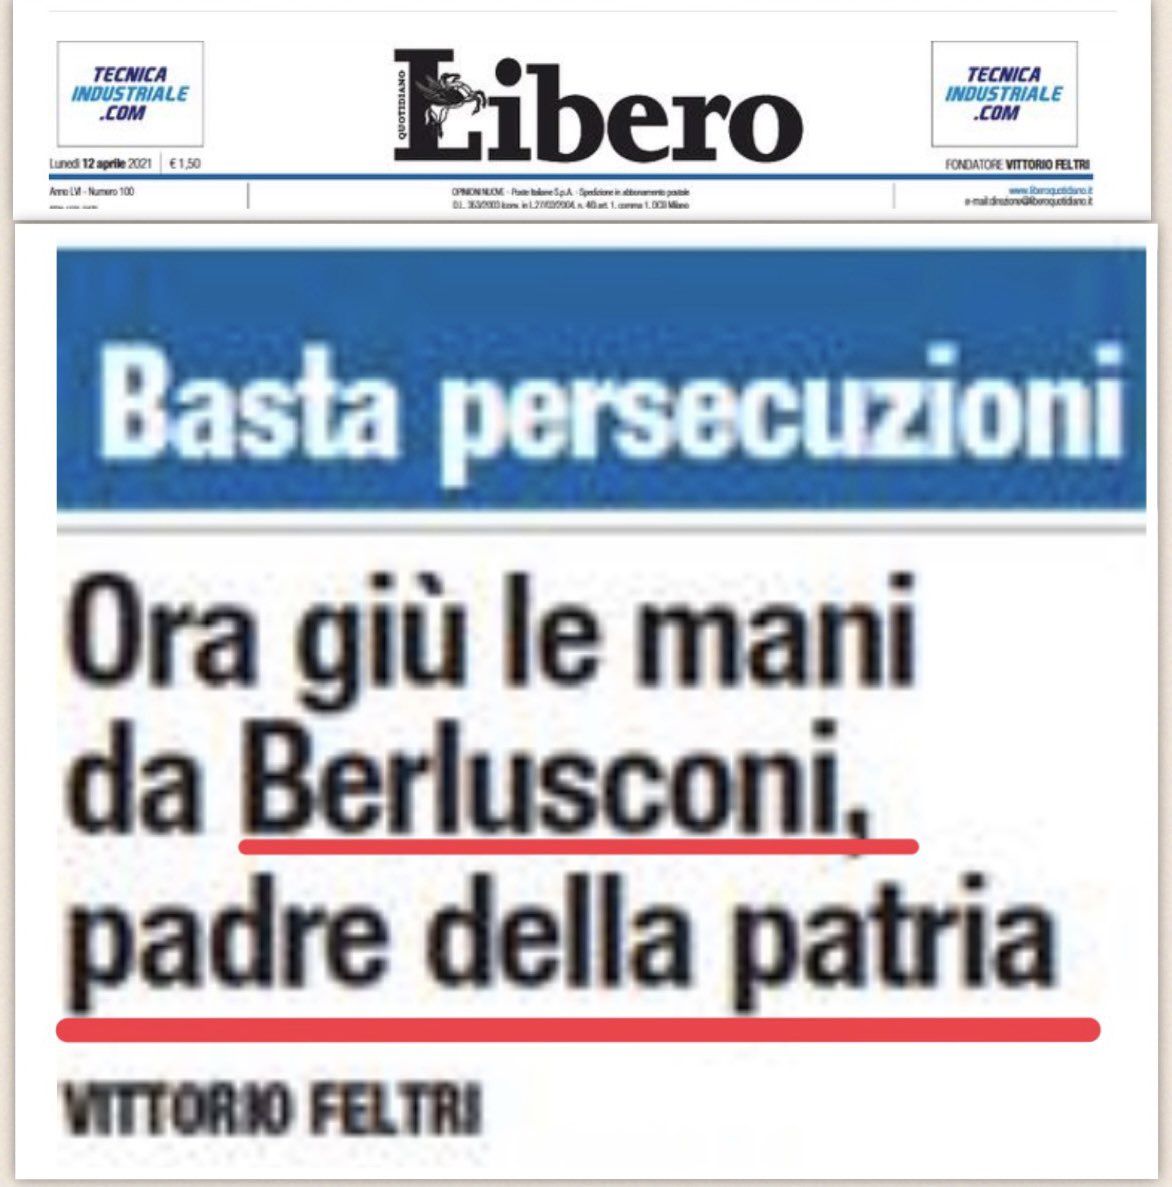 🟥IL PADRE DELLA PATRIA.....🙄👇
#costituzioneitaliana #Berlusconi #libero